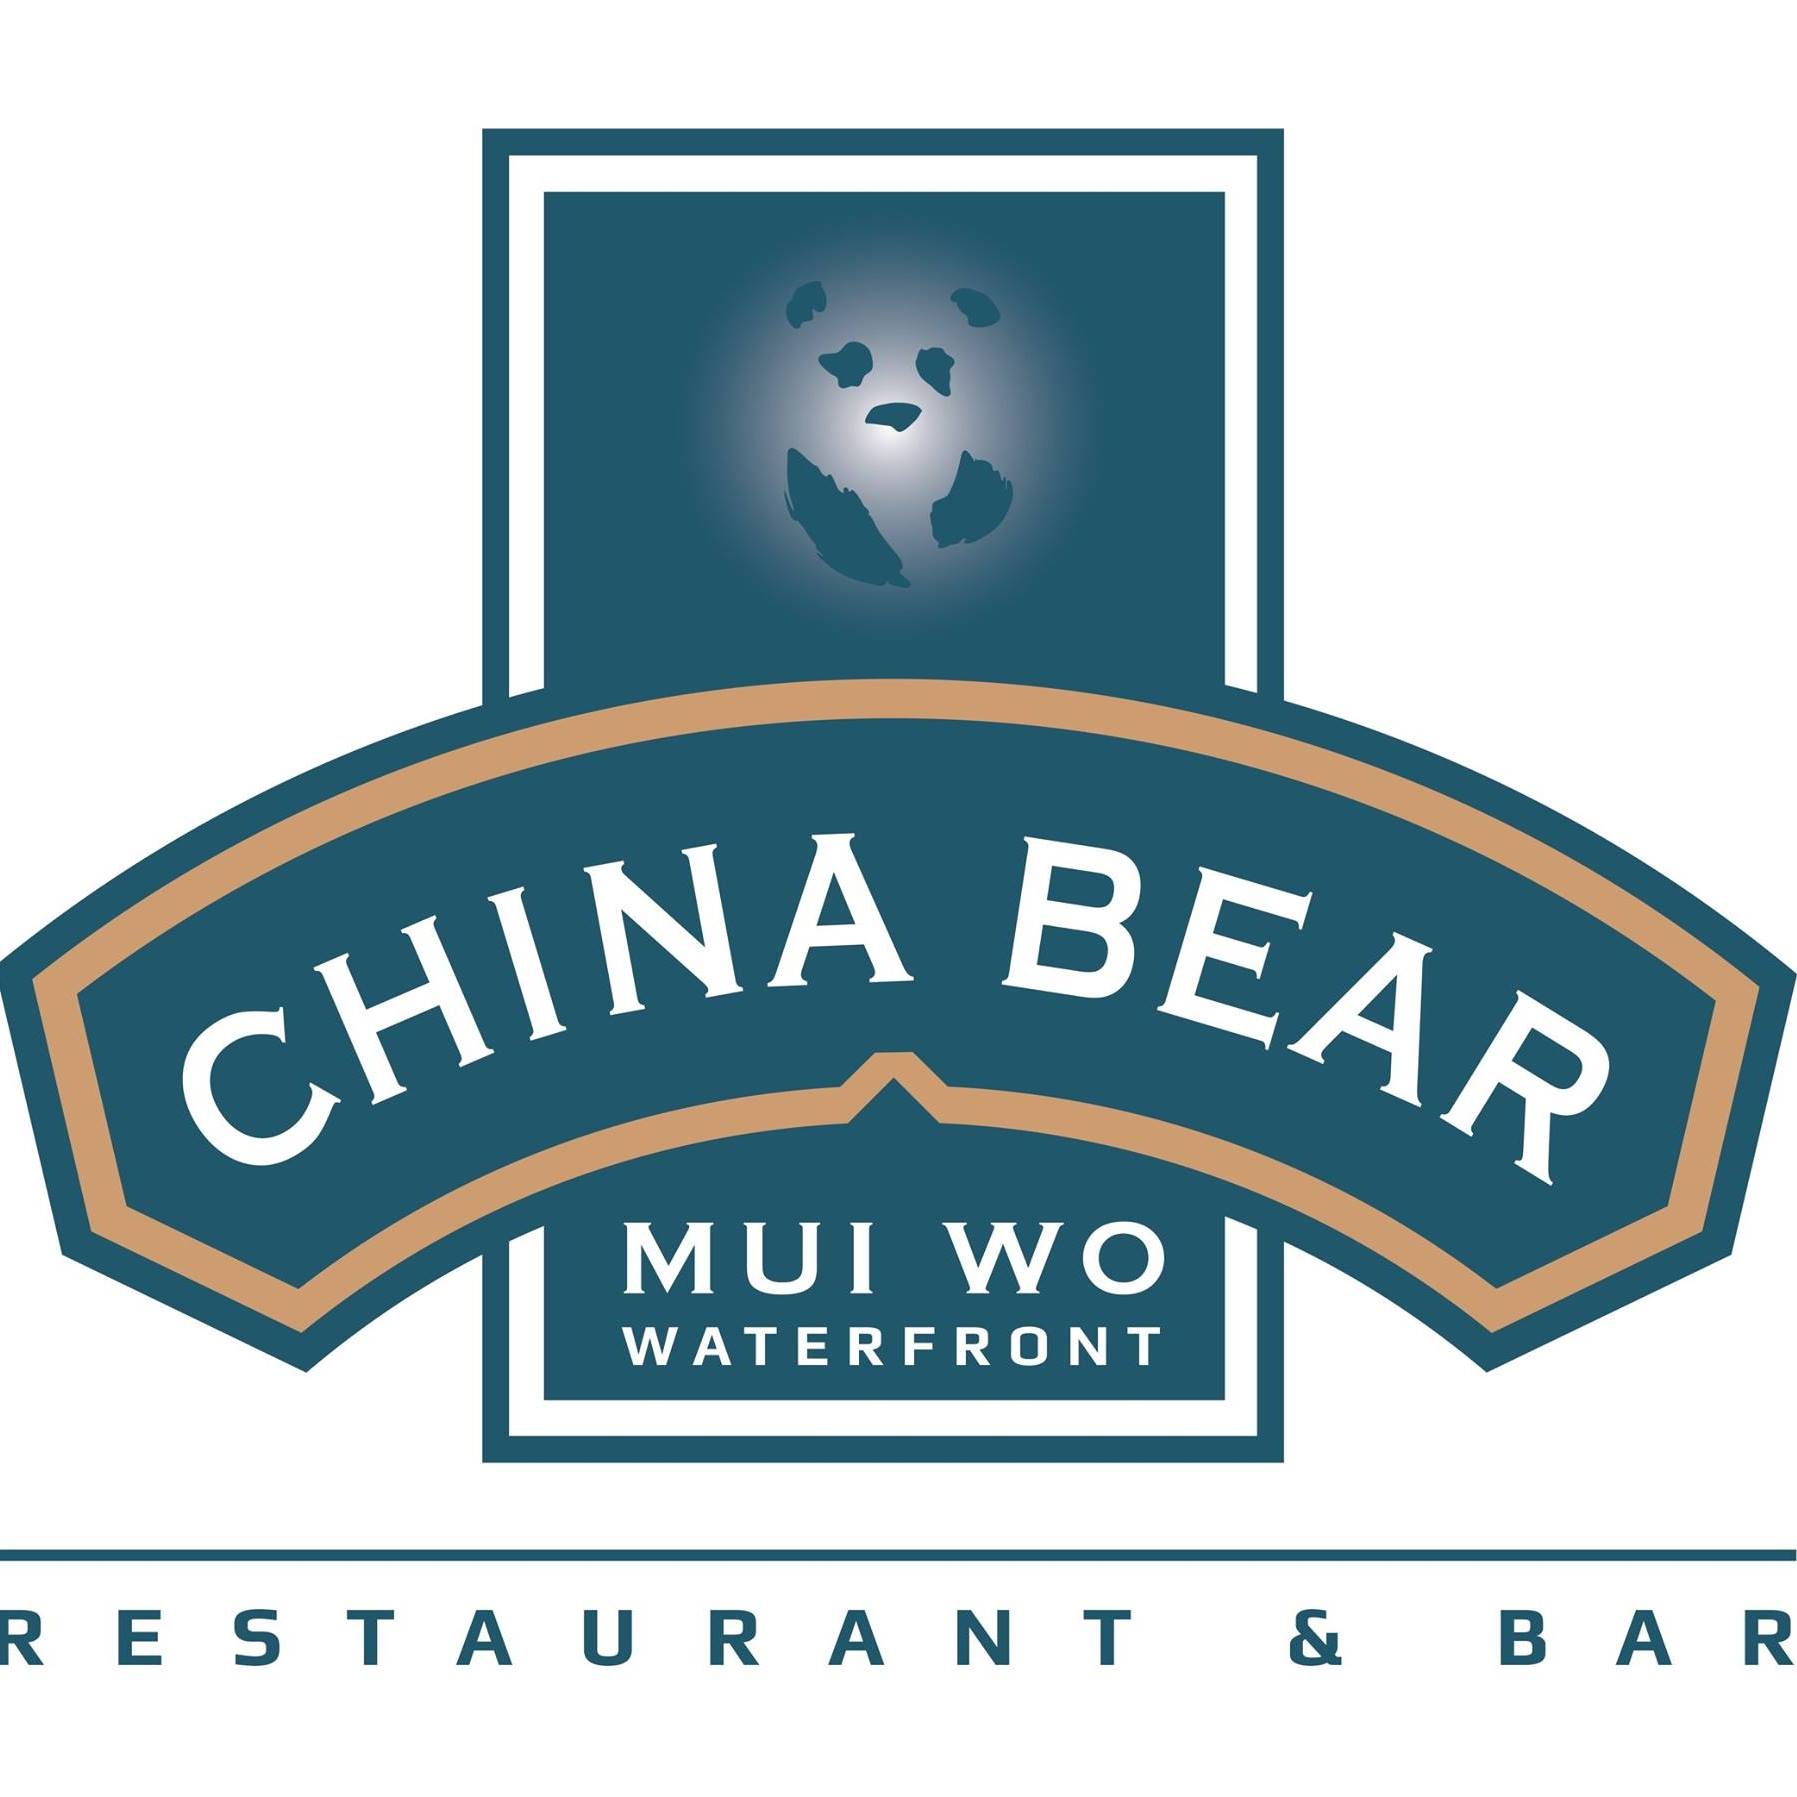 the china bear logo